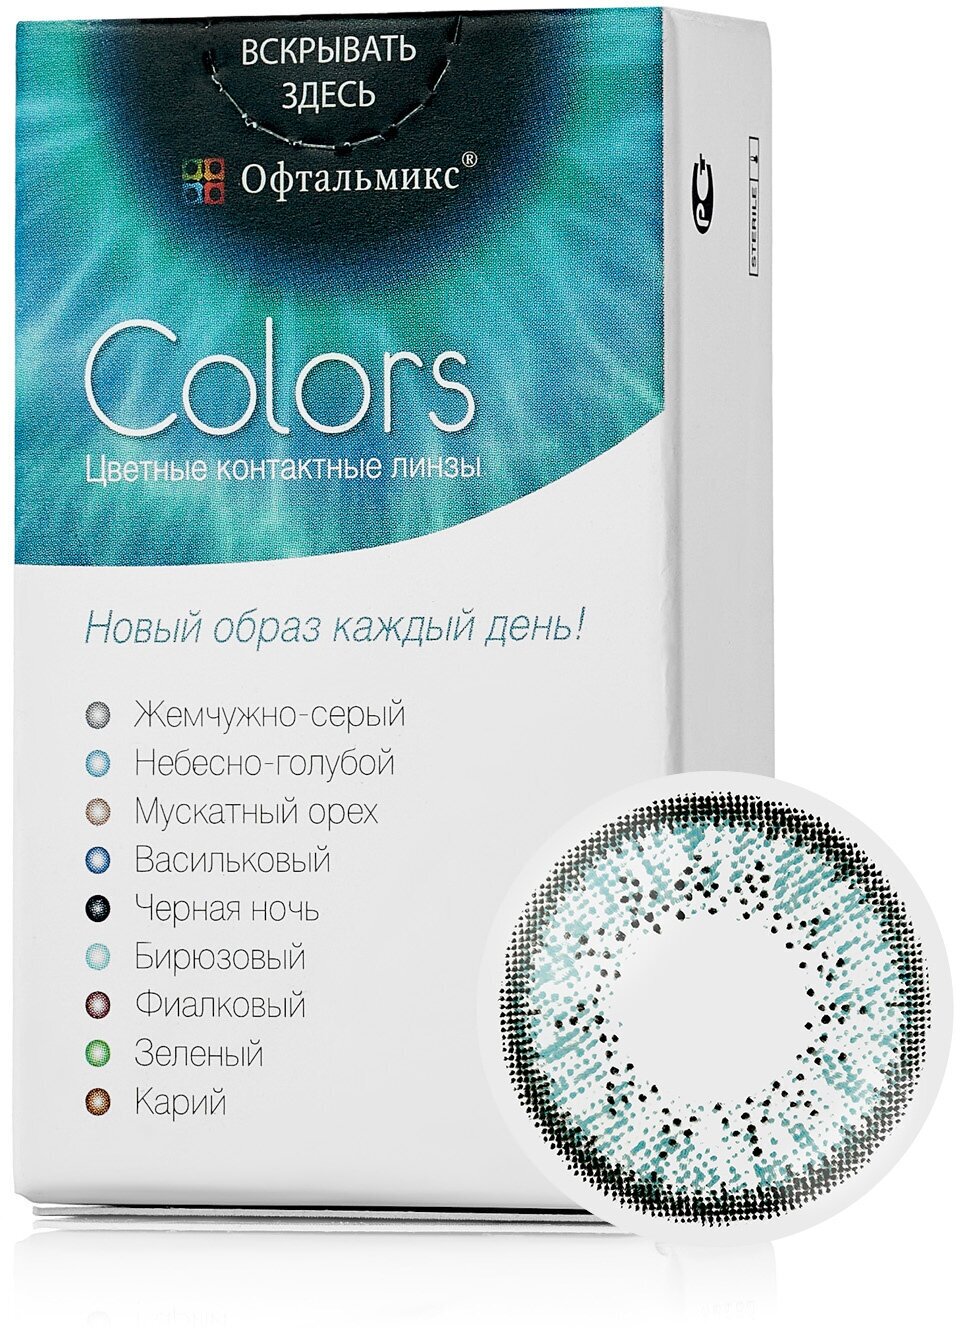 Цветные контактные линзы Офтальмикс Color Sky blue (небесно-голубой) R8.6 -1.5D (2шт.)